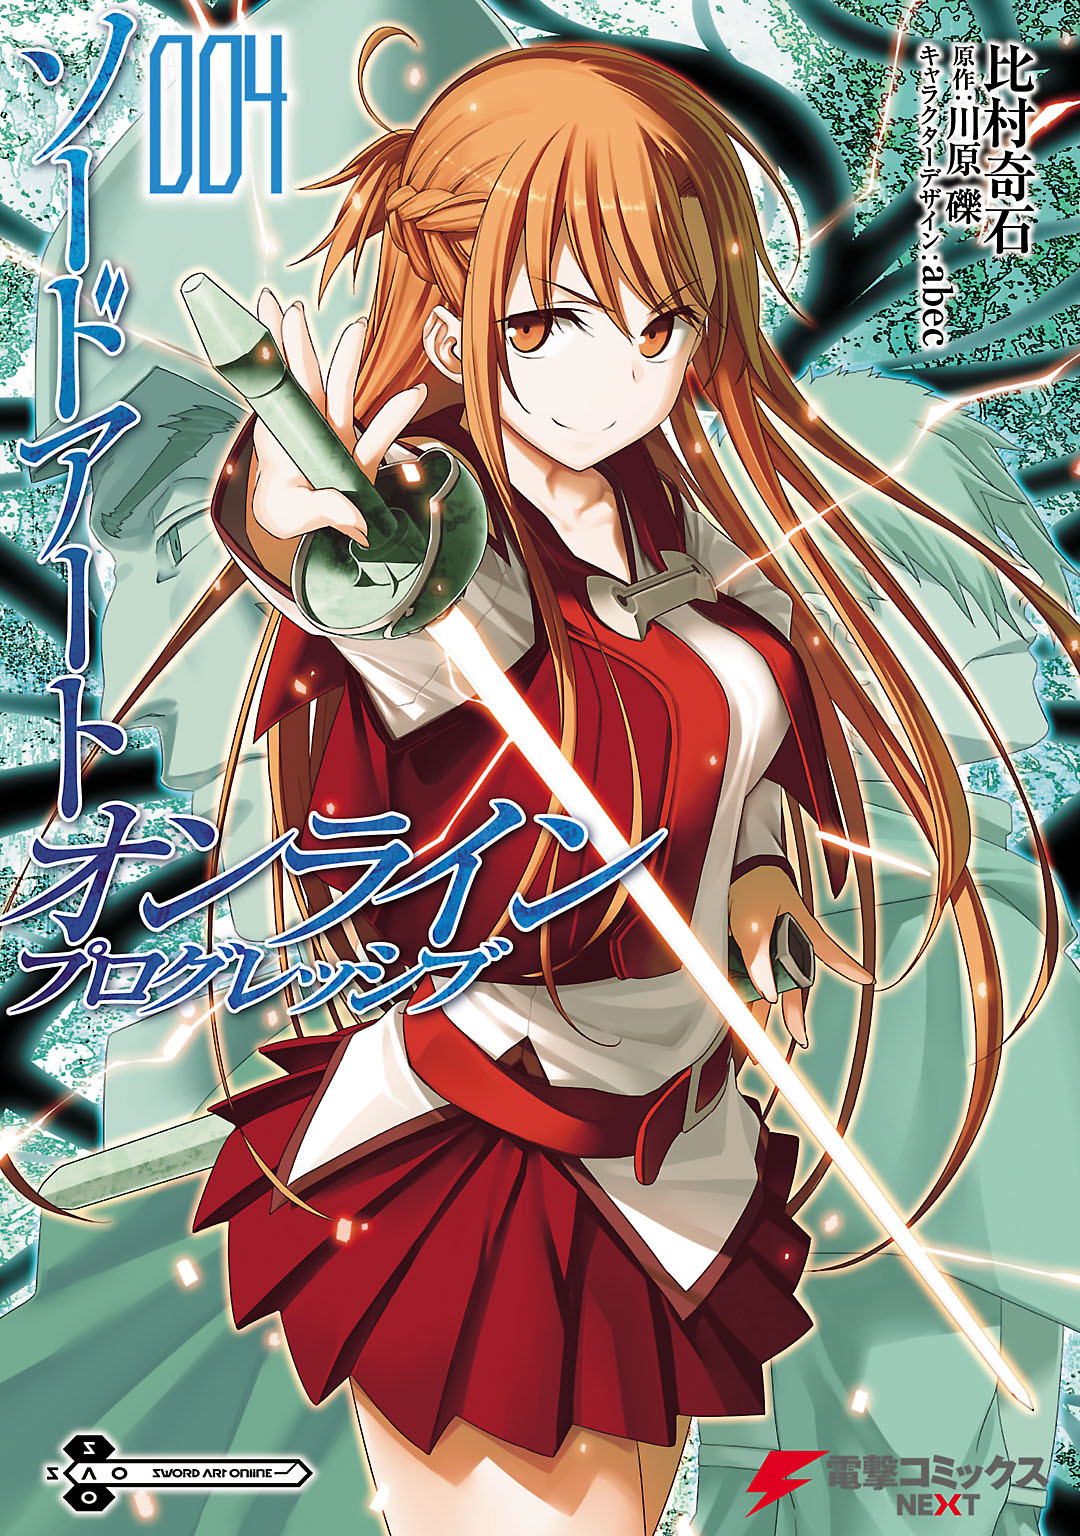 Sword Art Online Light Novel Volume 04